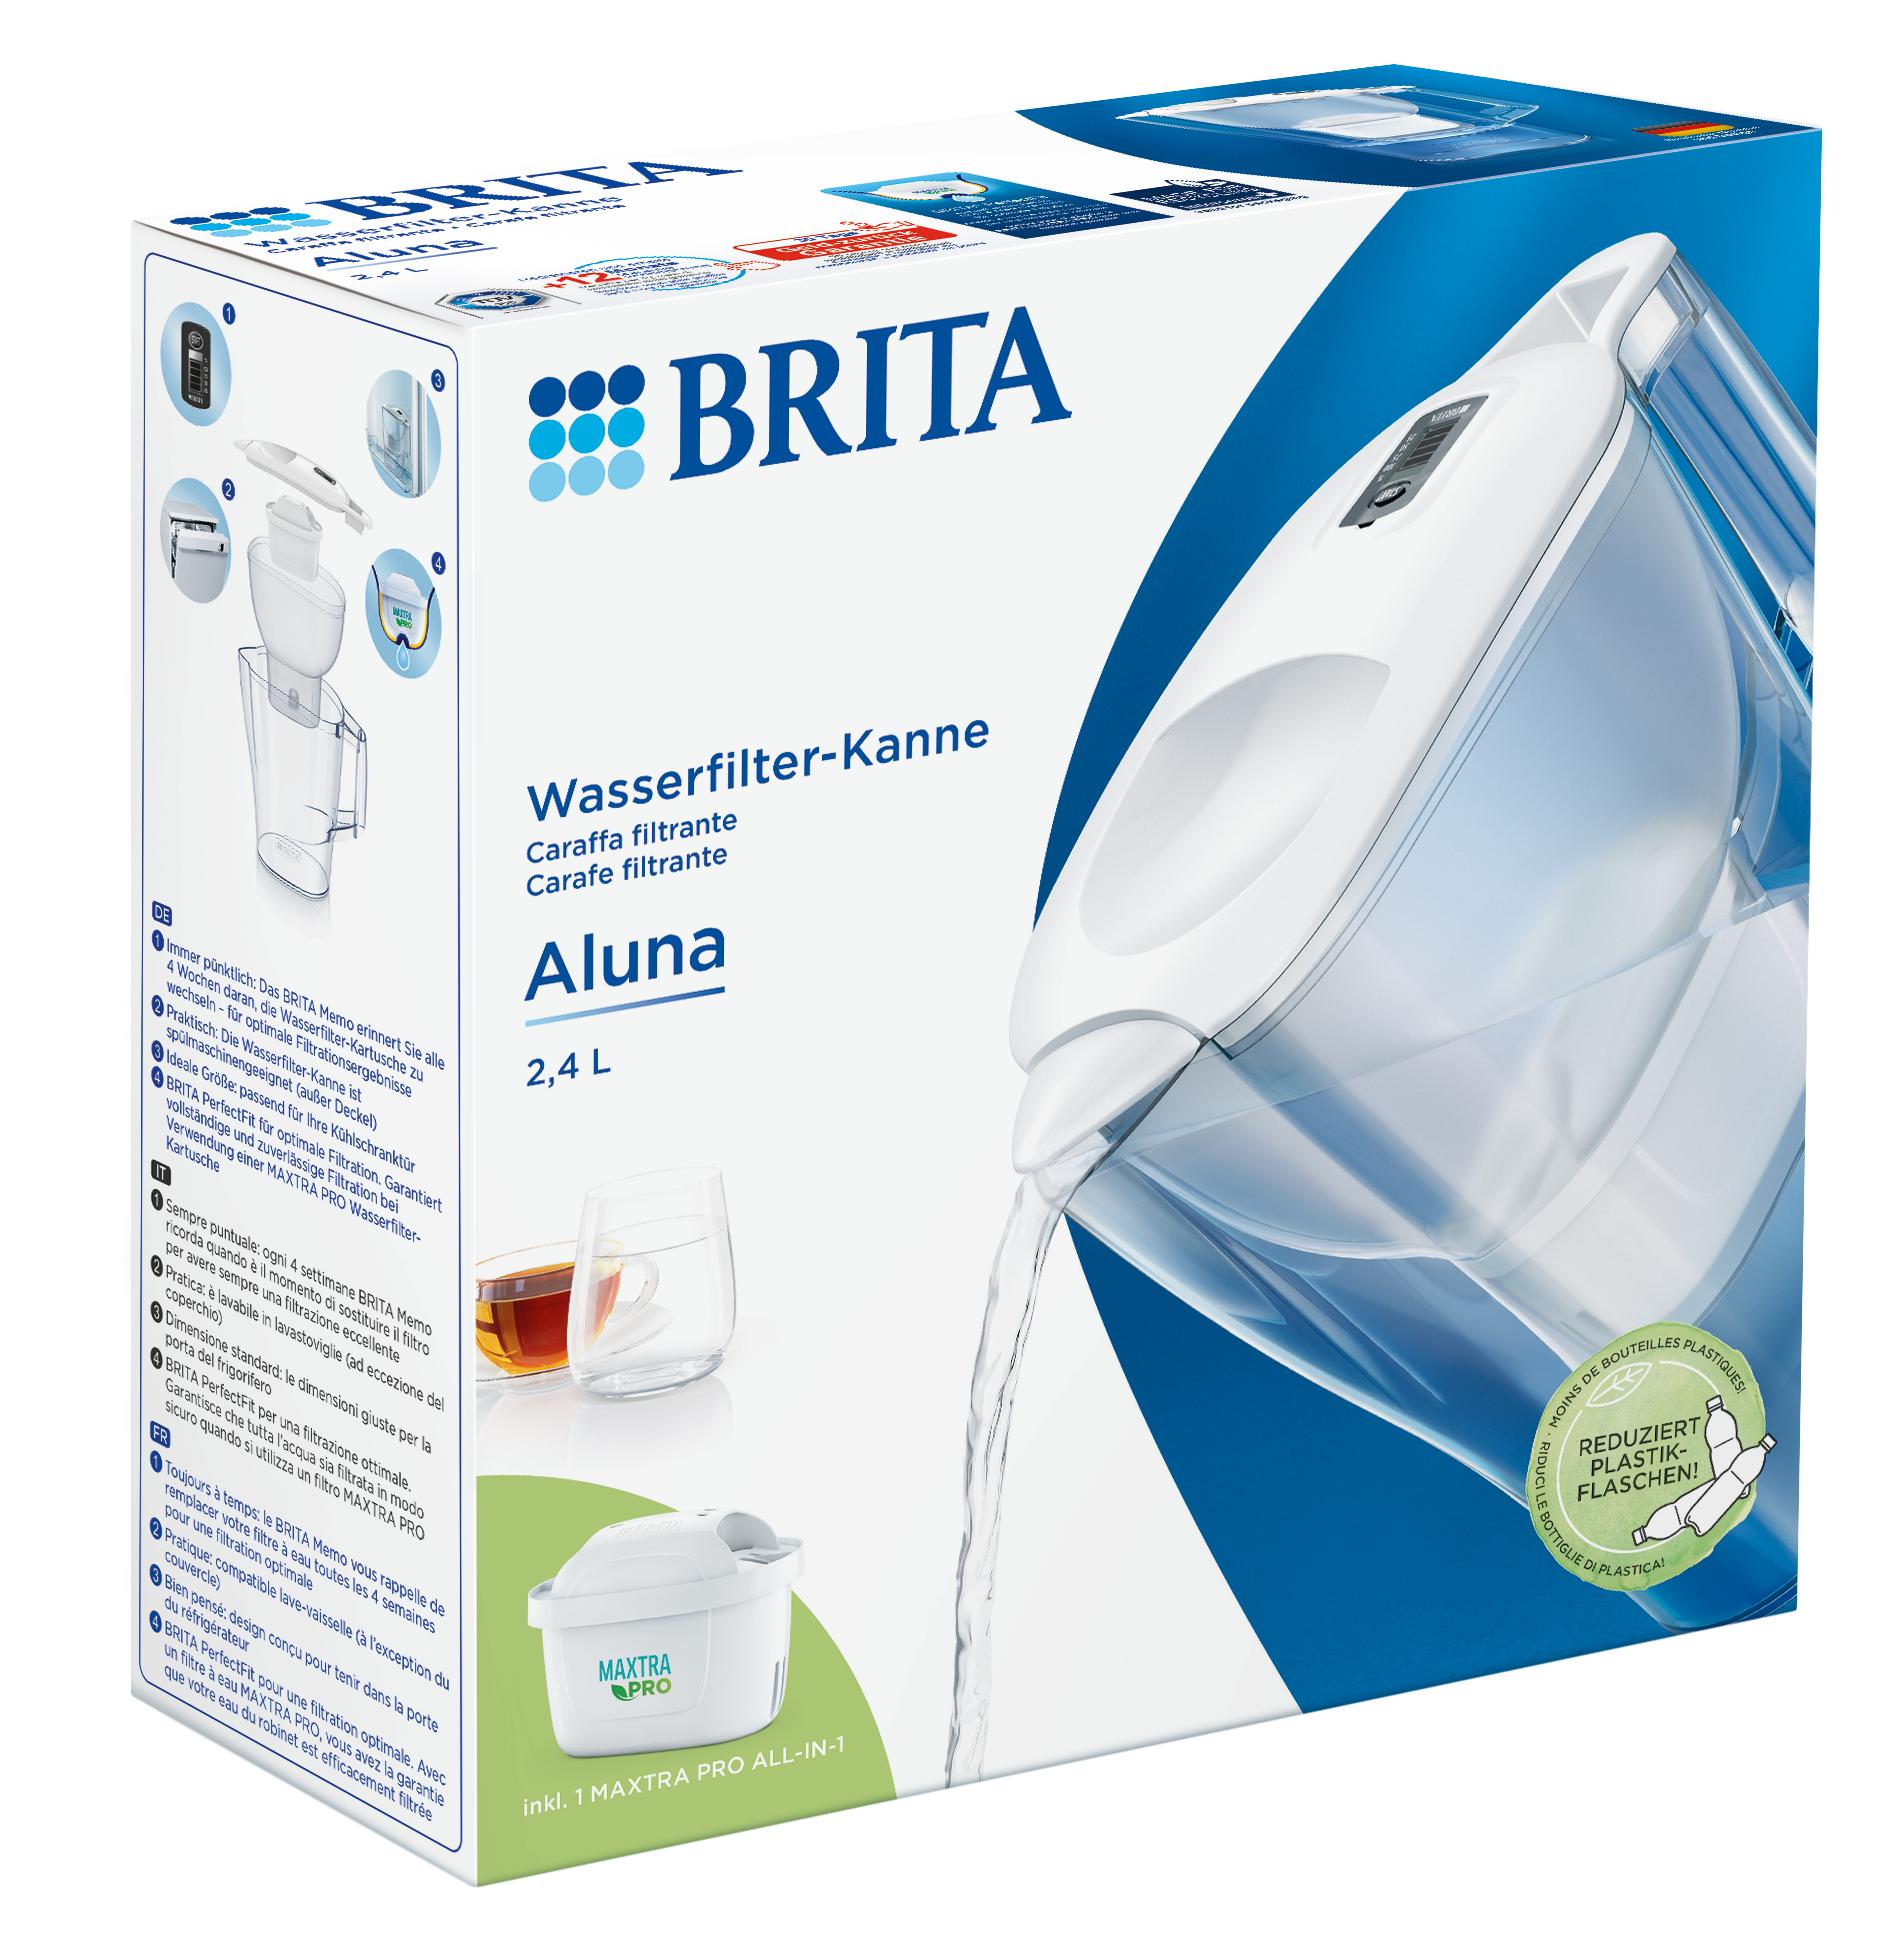 BRITA® Wasserfilter-Kanne Aluna weiß Farbe Blau wählen: »